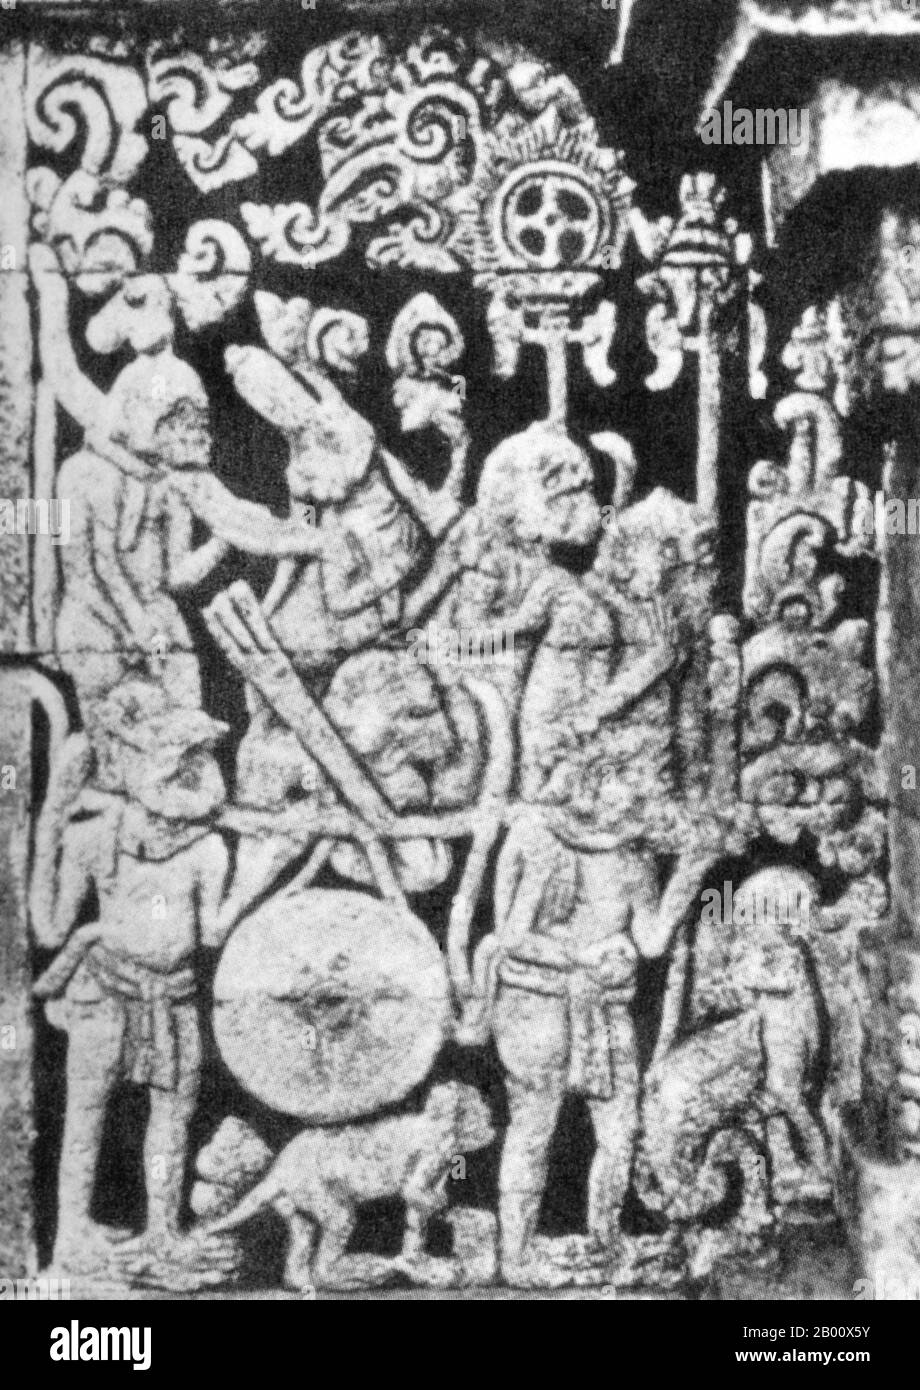 Indonésie : à partir d'un relief du XIVe siècle au temple javanais Candi Panataran, cette scène du Ramayana montre l'armée du roi de singe Sugiwa portant un gros gong. Le Ramayana est l'une des deux épopées hindoues anciennes, l'autre étant le Mahabharata. Dans le Ramayana, la femme de Rama, Sita, est enlevée par le méchant démon Ravana et prise en otage au Lanka. Elle est enfin sauvée par Hanuman, le Dieu singe héroïque. Banque D'Images